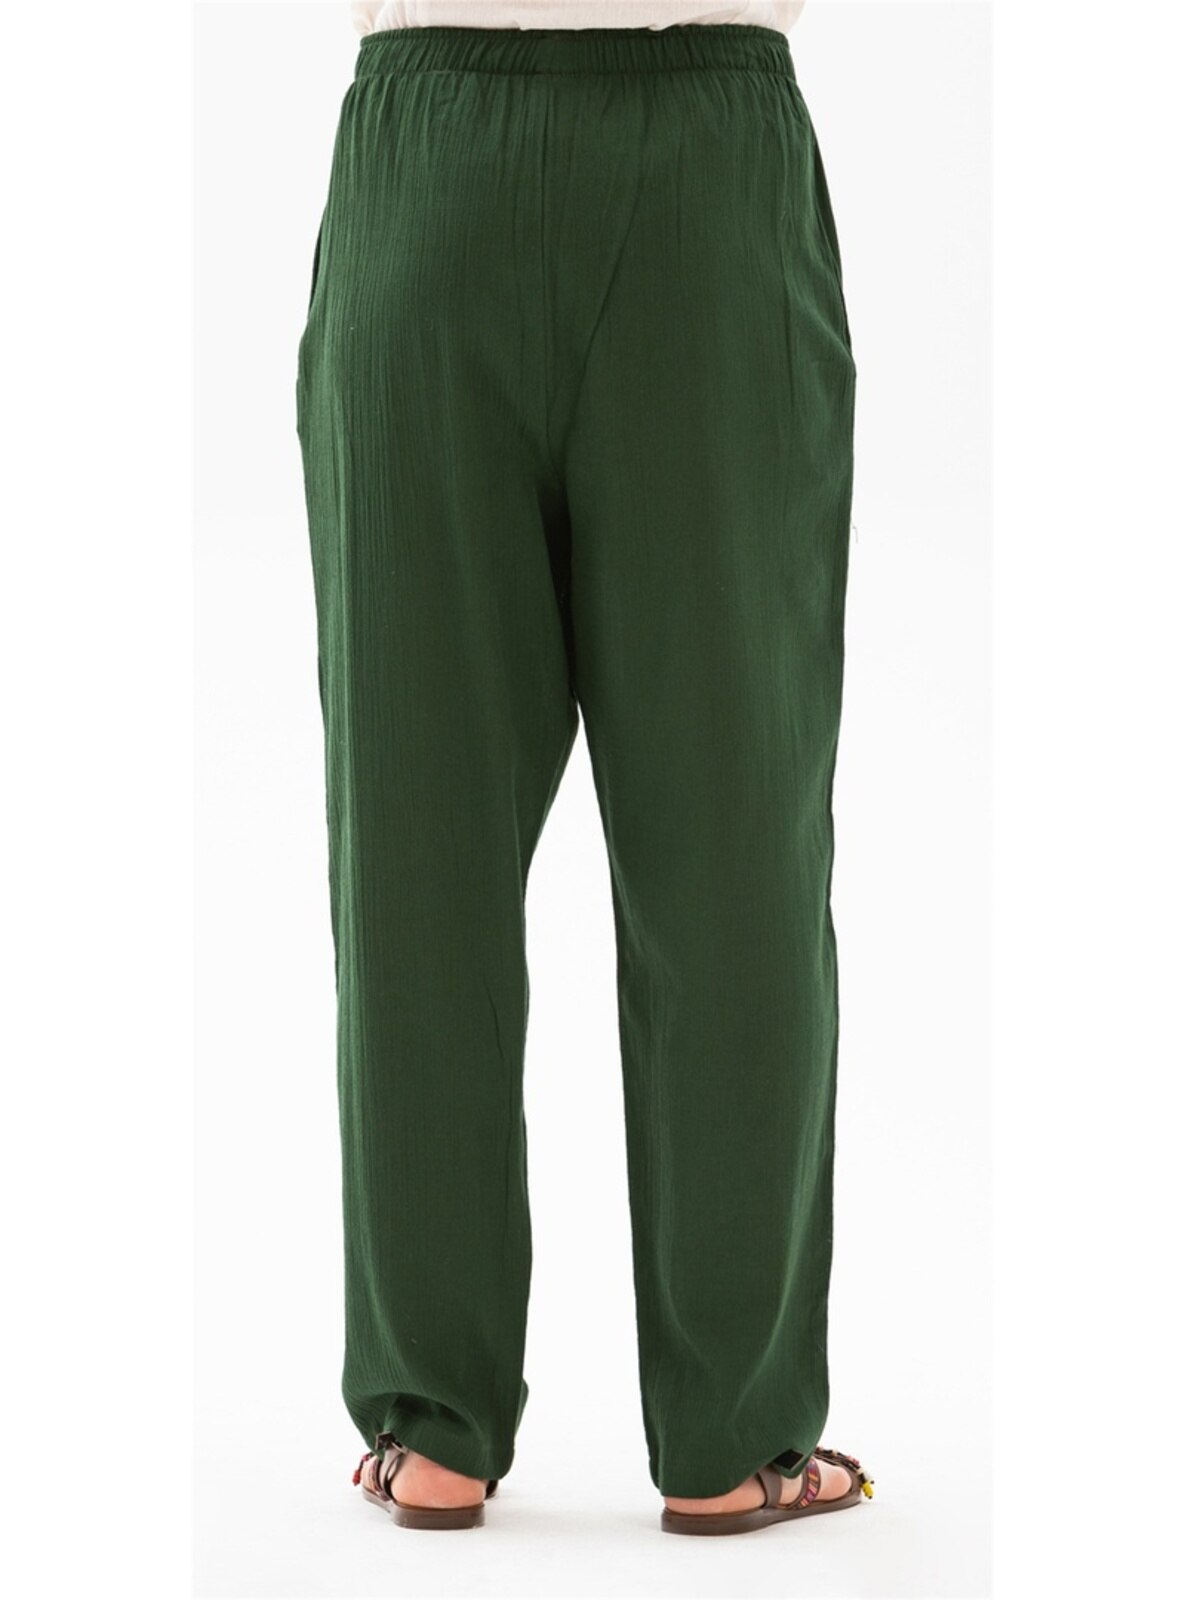 Green - Cotton - Pants